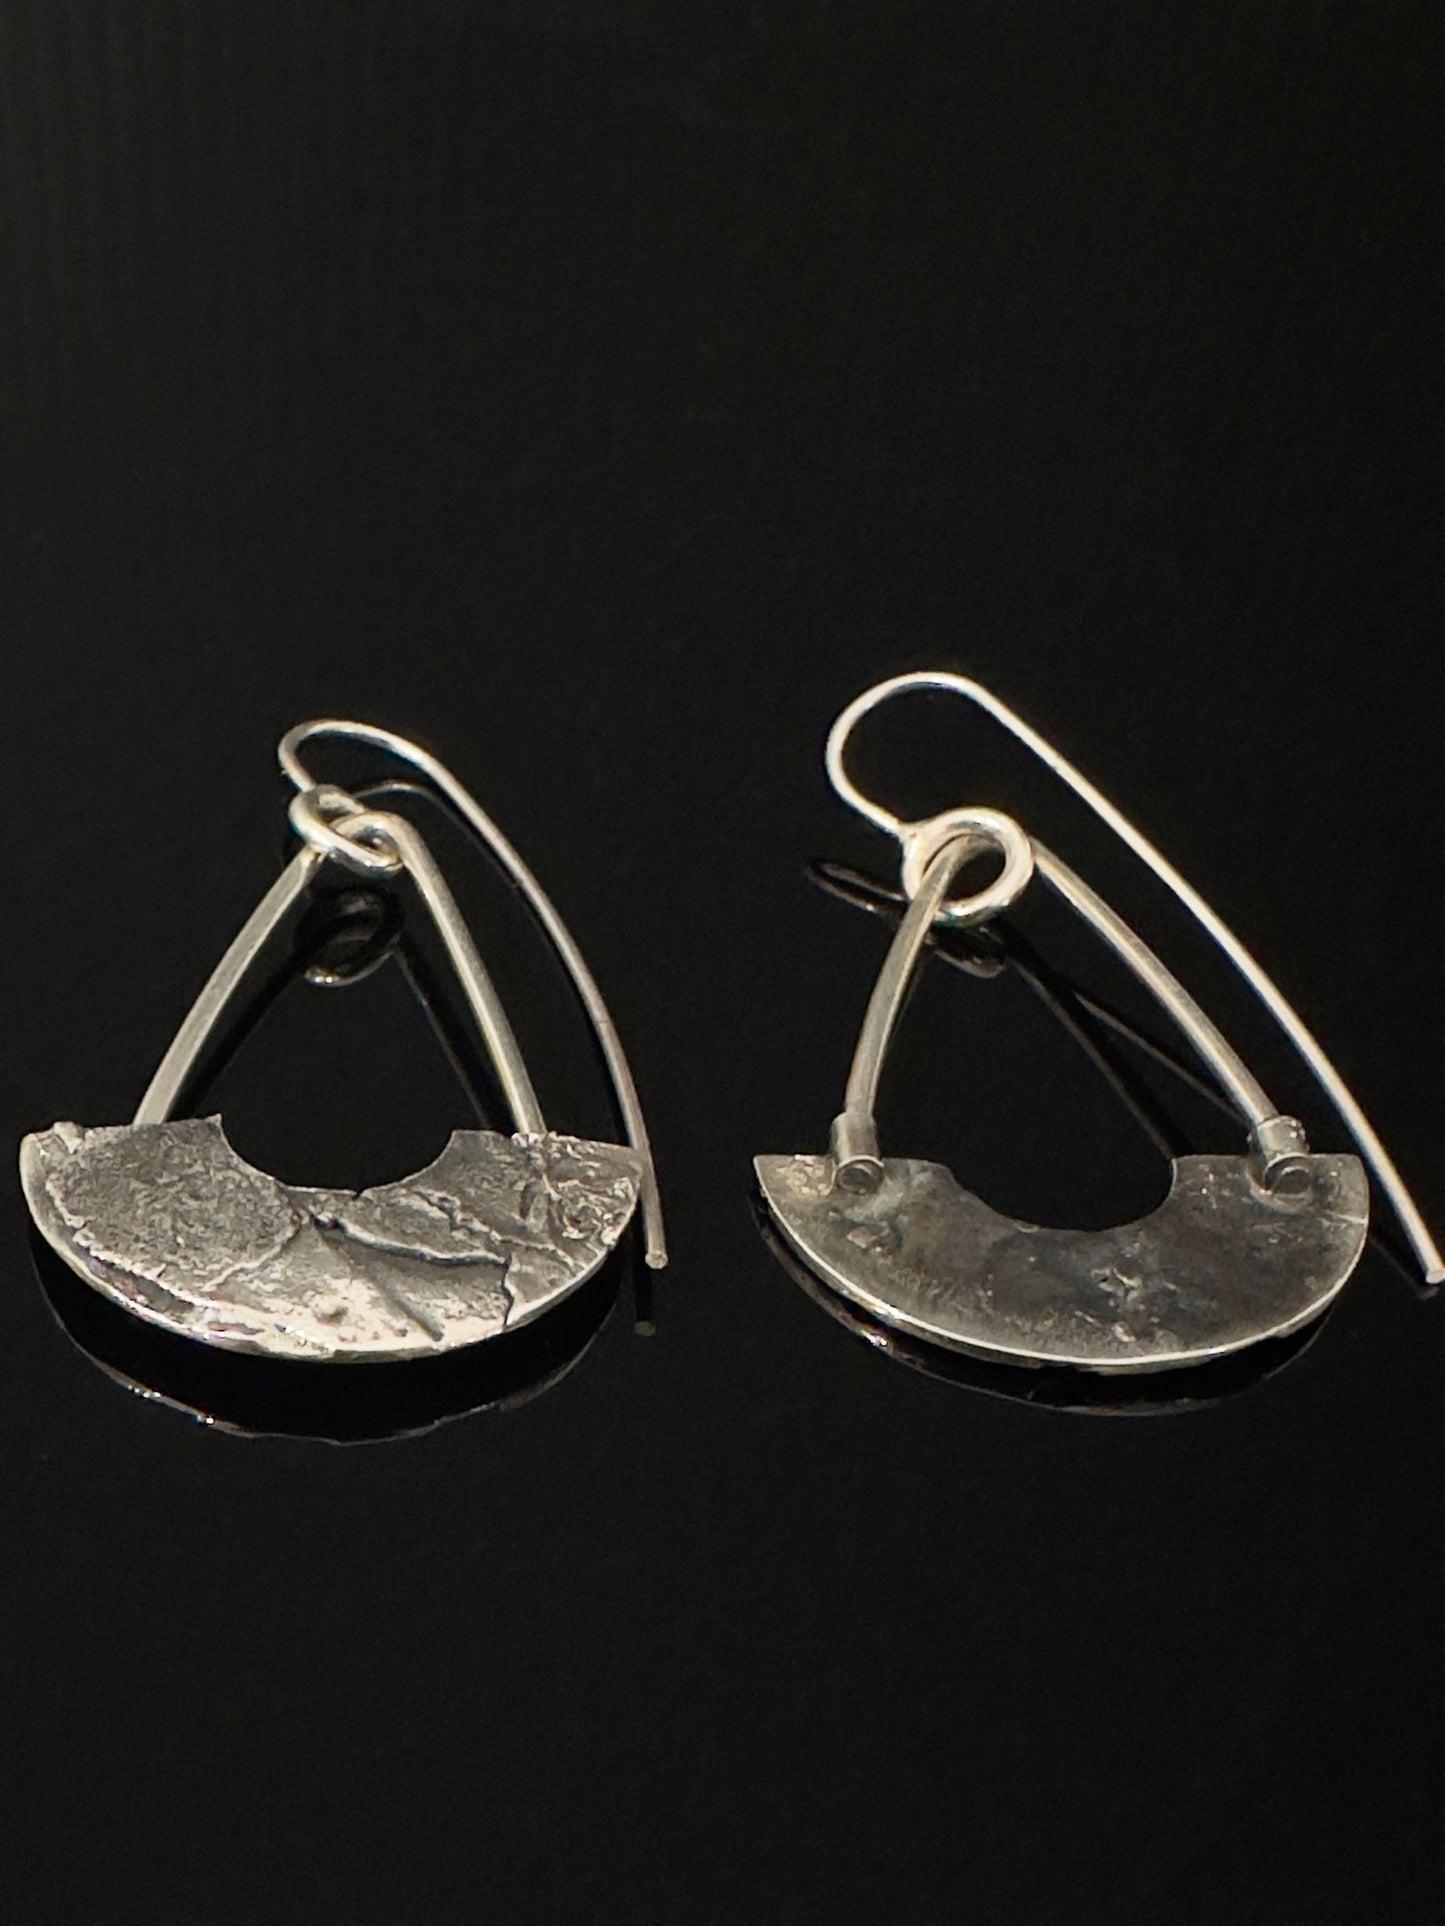 Tamara Kelly Designs - Fused textured earring series